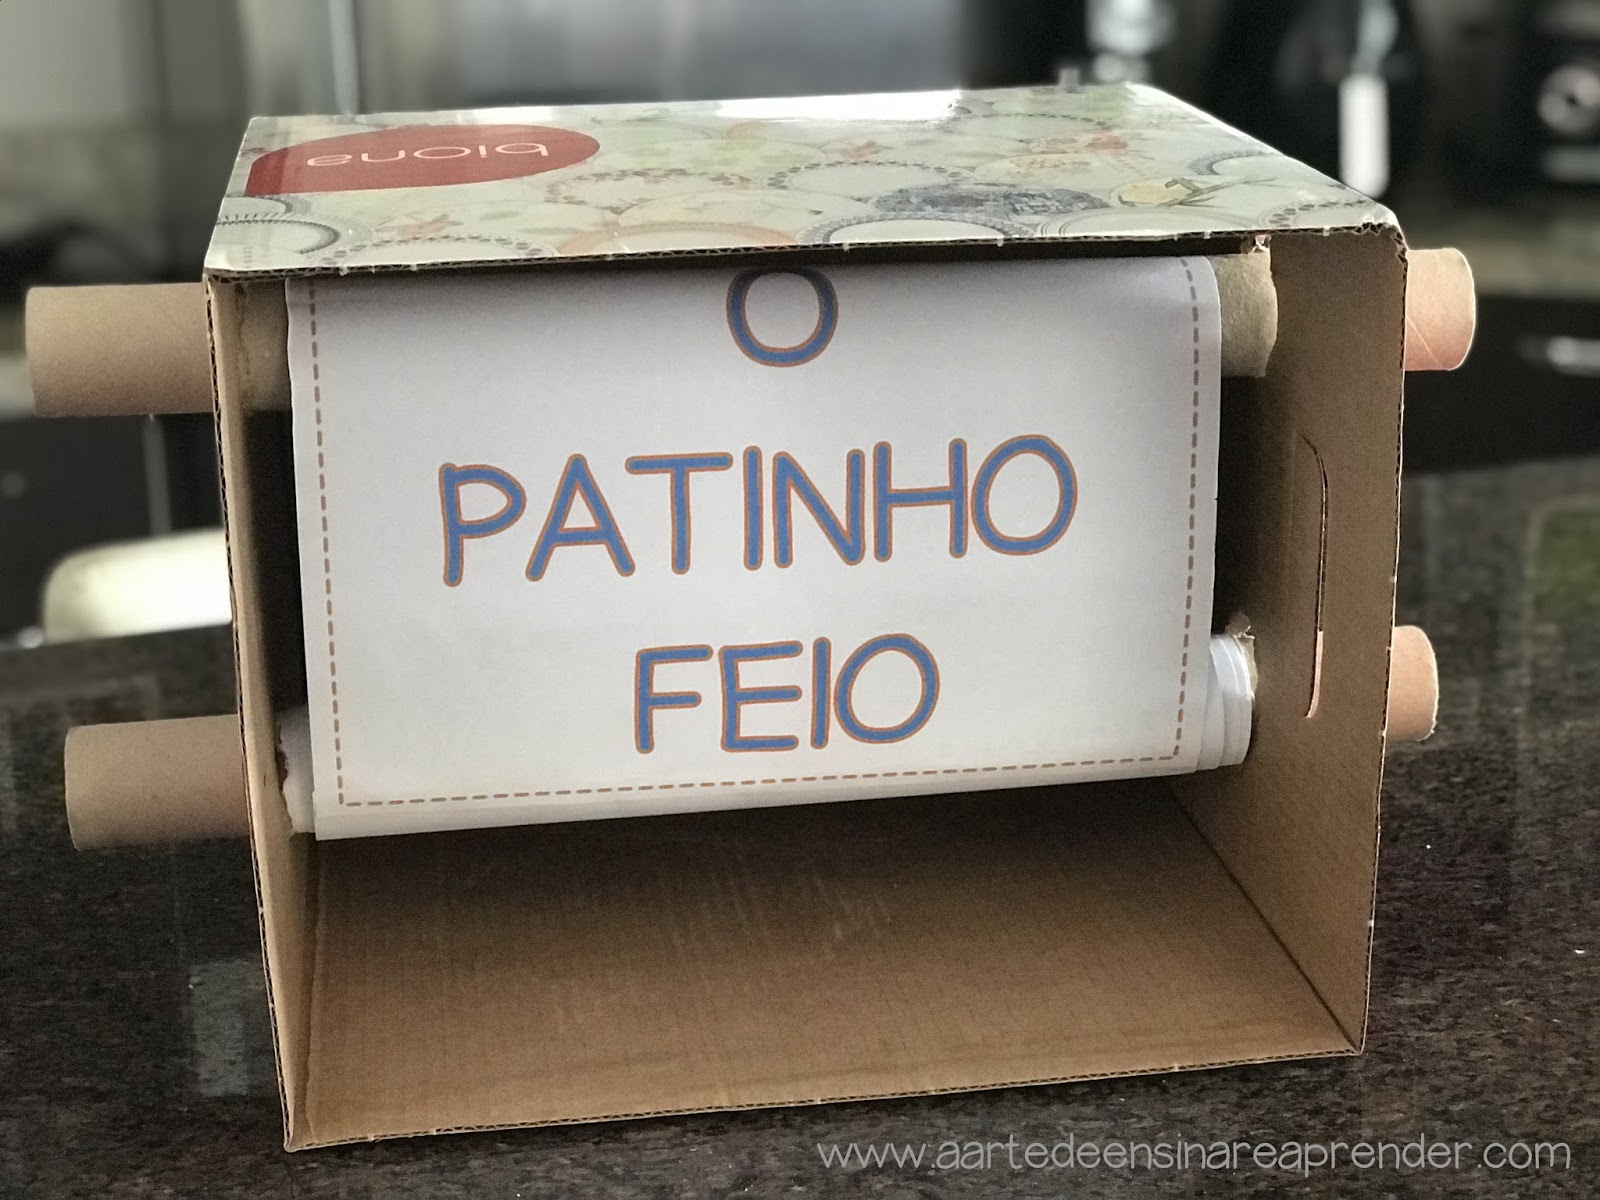 COMO FAZER UM JOGO DE LABIRINTO - Reciclável feito com papelão - DIY 